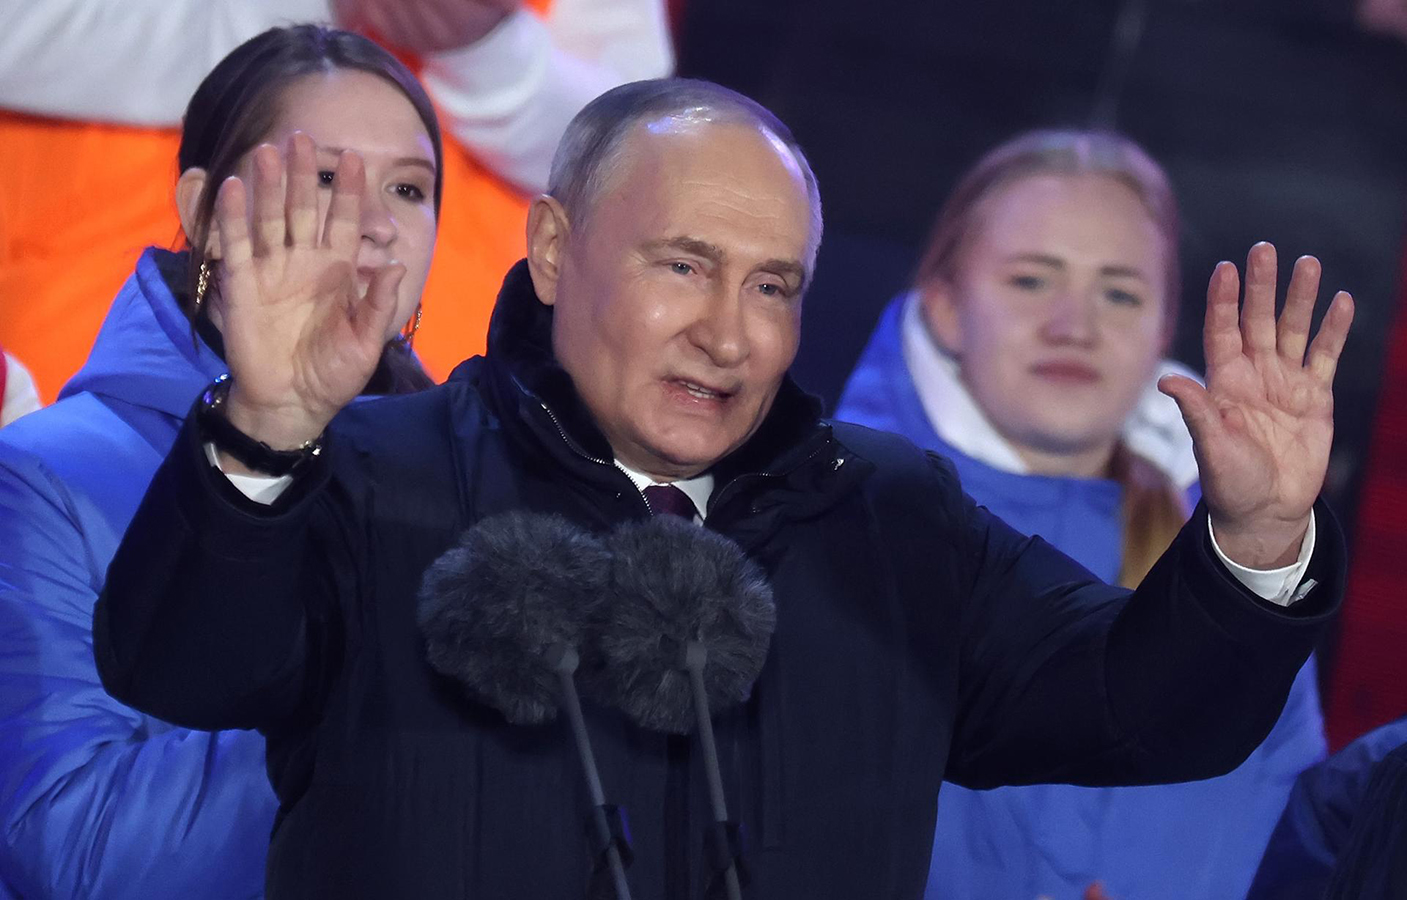 La economía, la disidencia y la guerra de Ucrania, complican nuevo mandato de Putin